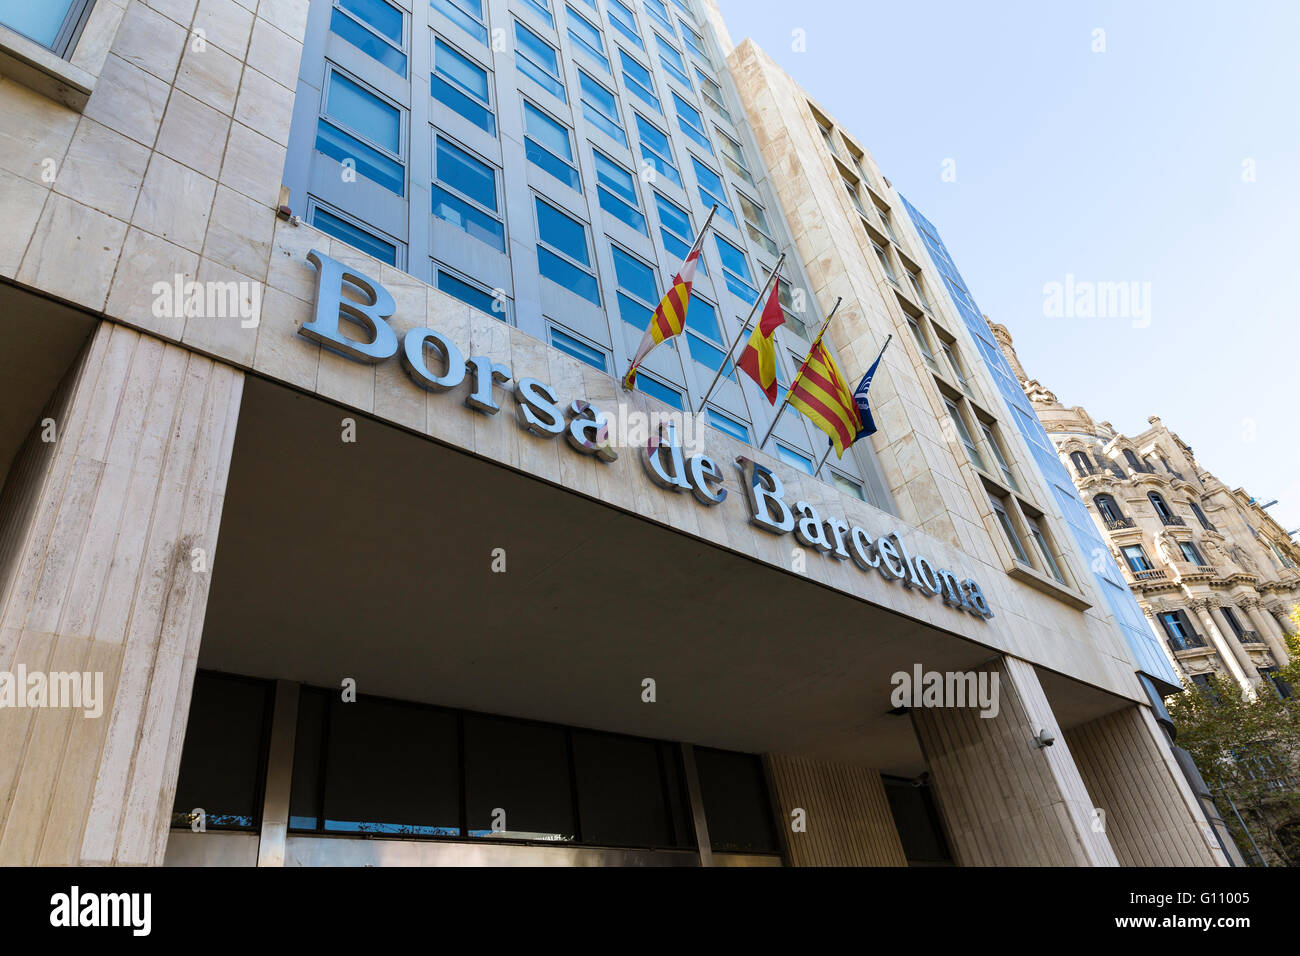 Borsa de Barcelona.La façade de l'immeuble de la bourse Bourse de Barcelone Banque D'Images